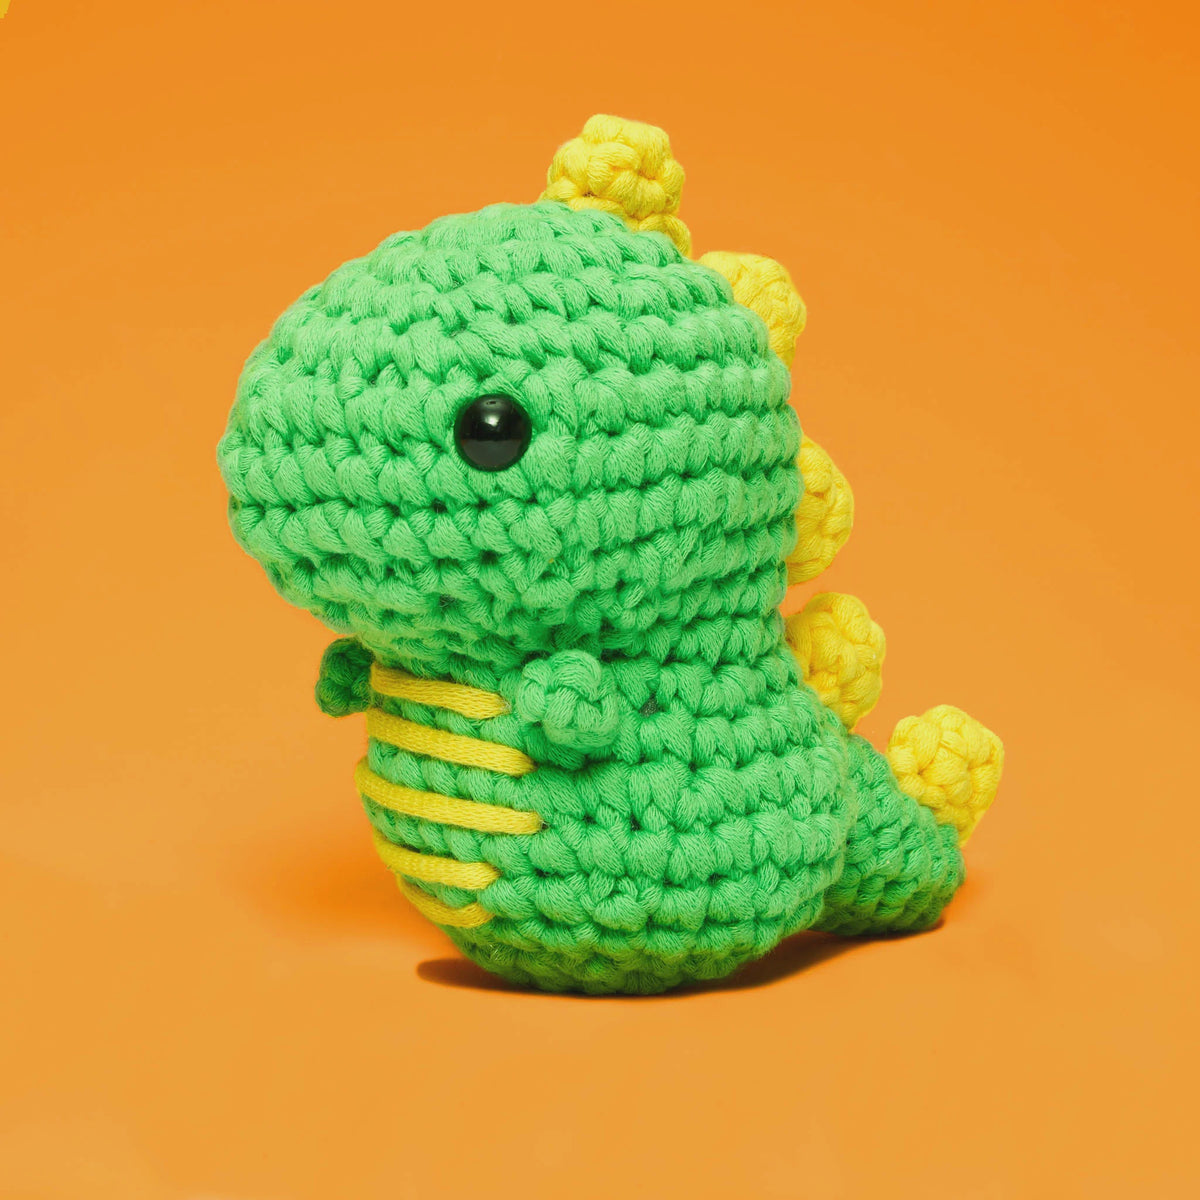 Fred the Dinosaur - Crochet Kit